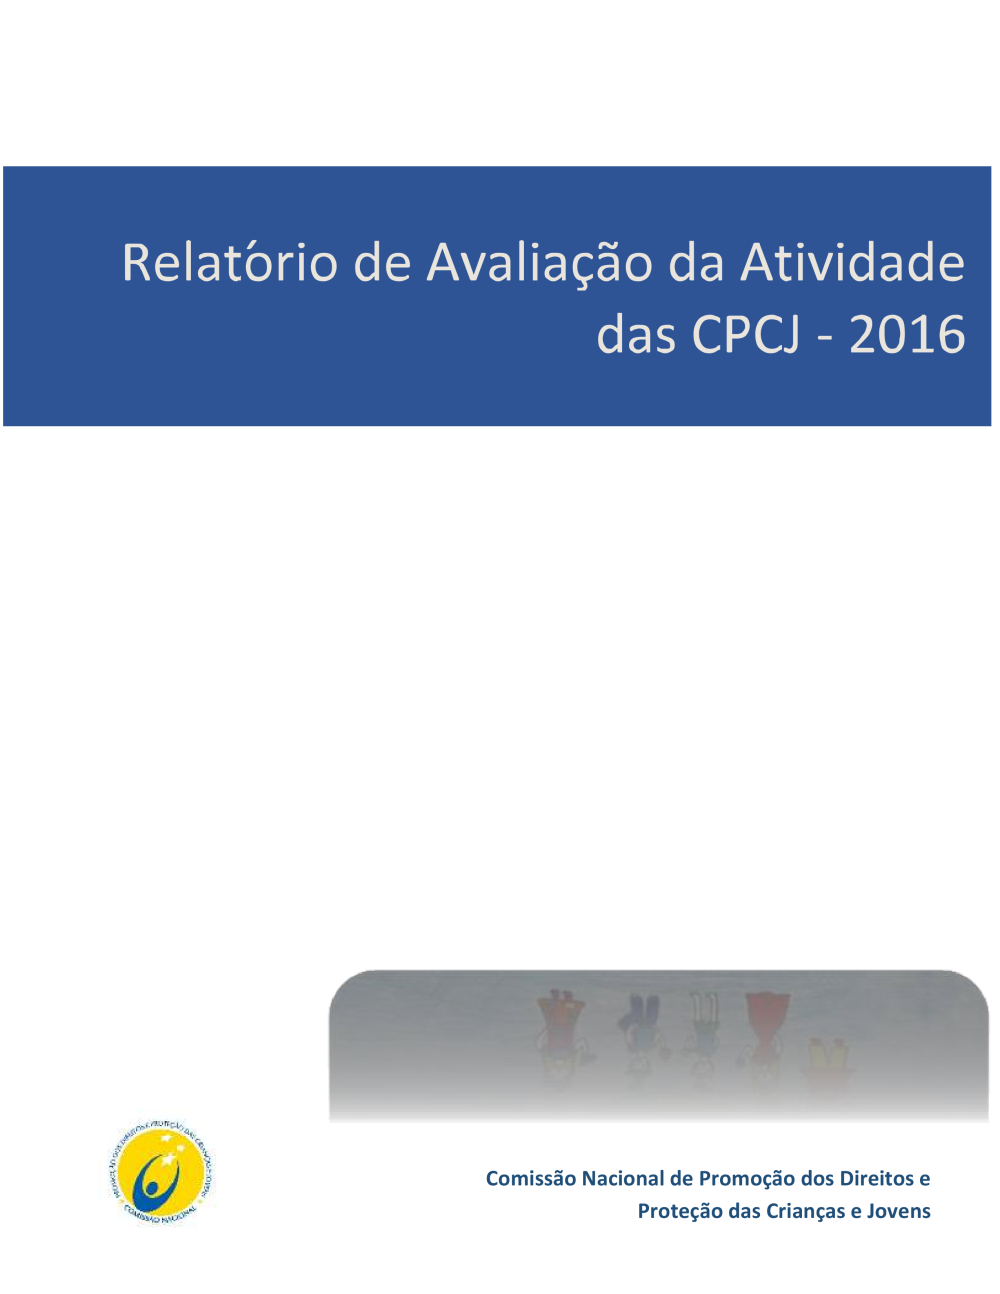 Relatório Anual de Avaliação da Atividade das CPCJ do ano de 2016